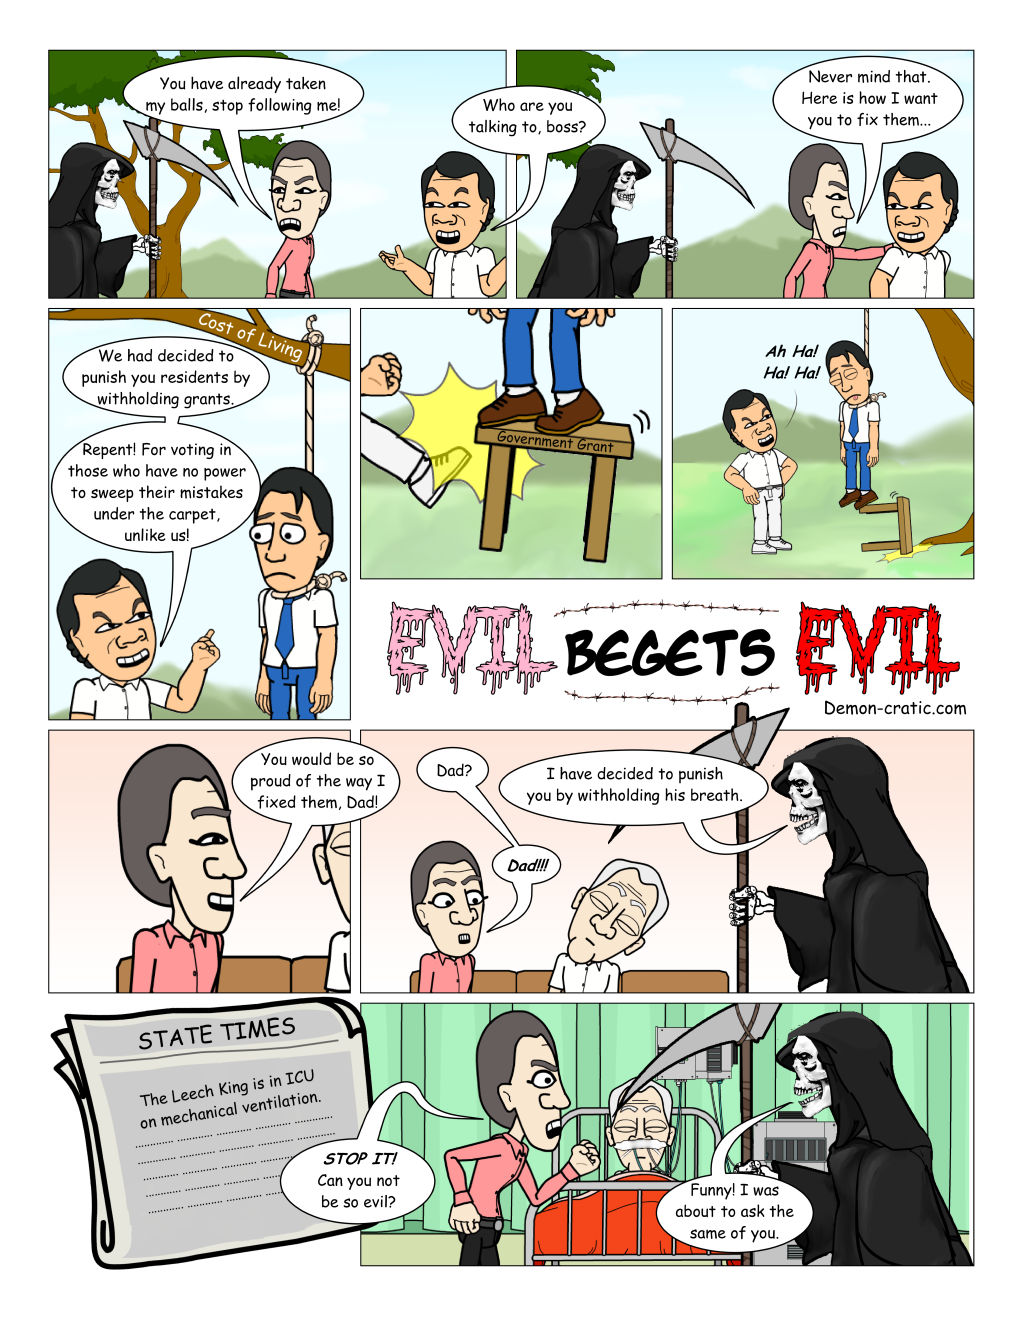 Evil Begets Evil - Demon-cratic